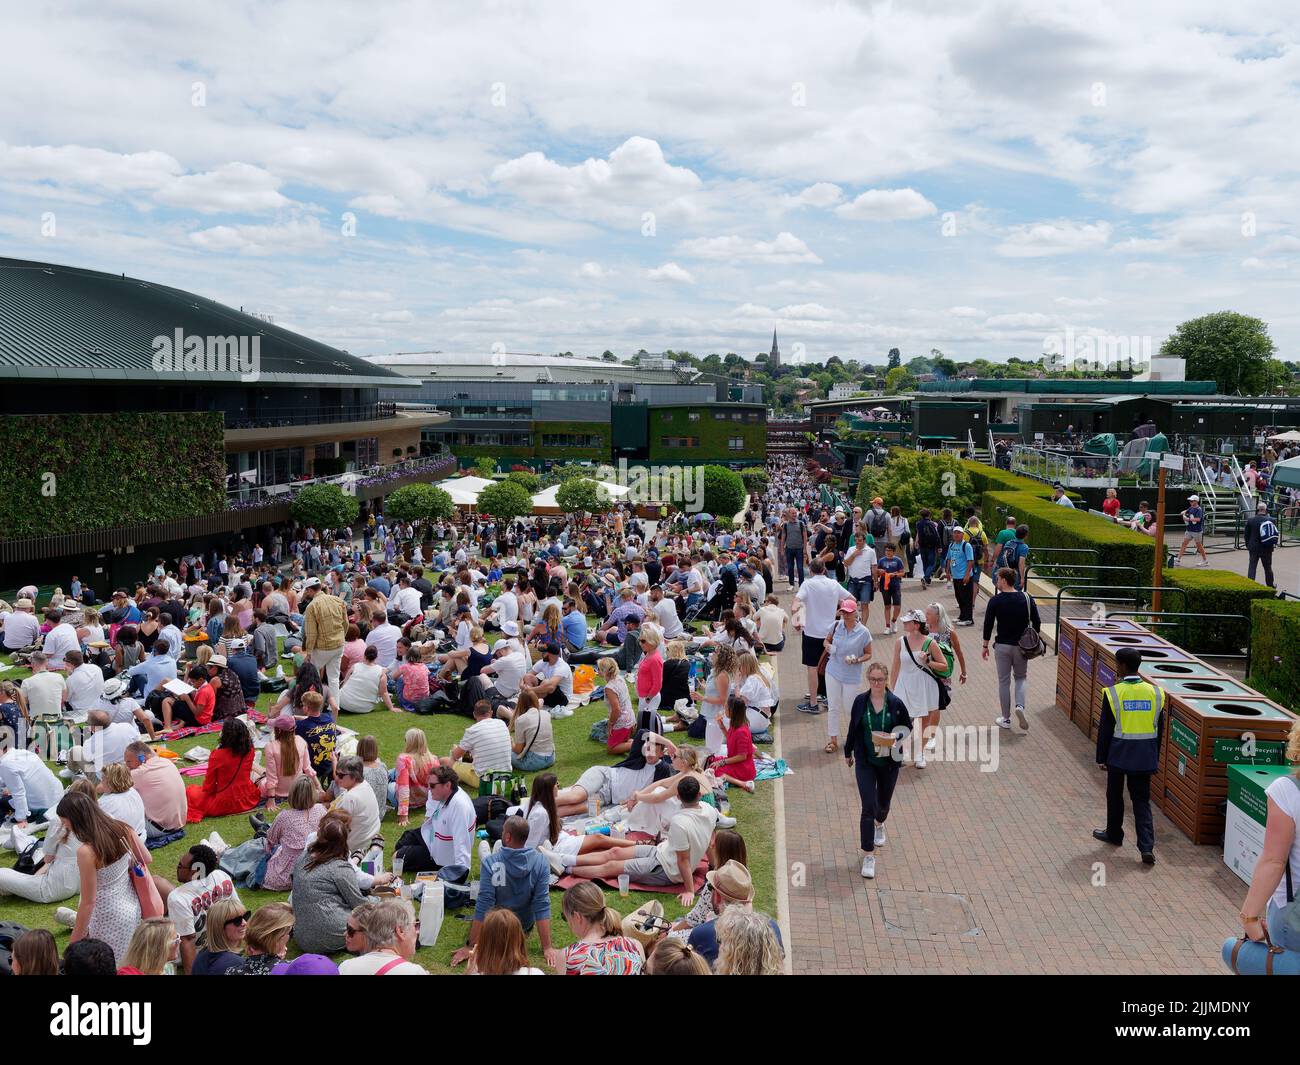 Wimbledon, Greater London, England, Juli 02 2022: Wimbledon Tennis Championship. Menschenmassen versammeln sich auf dem Hügel links vom Bild vor dem ersten Platz. Stockfoto